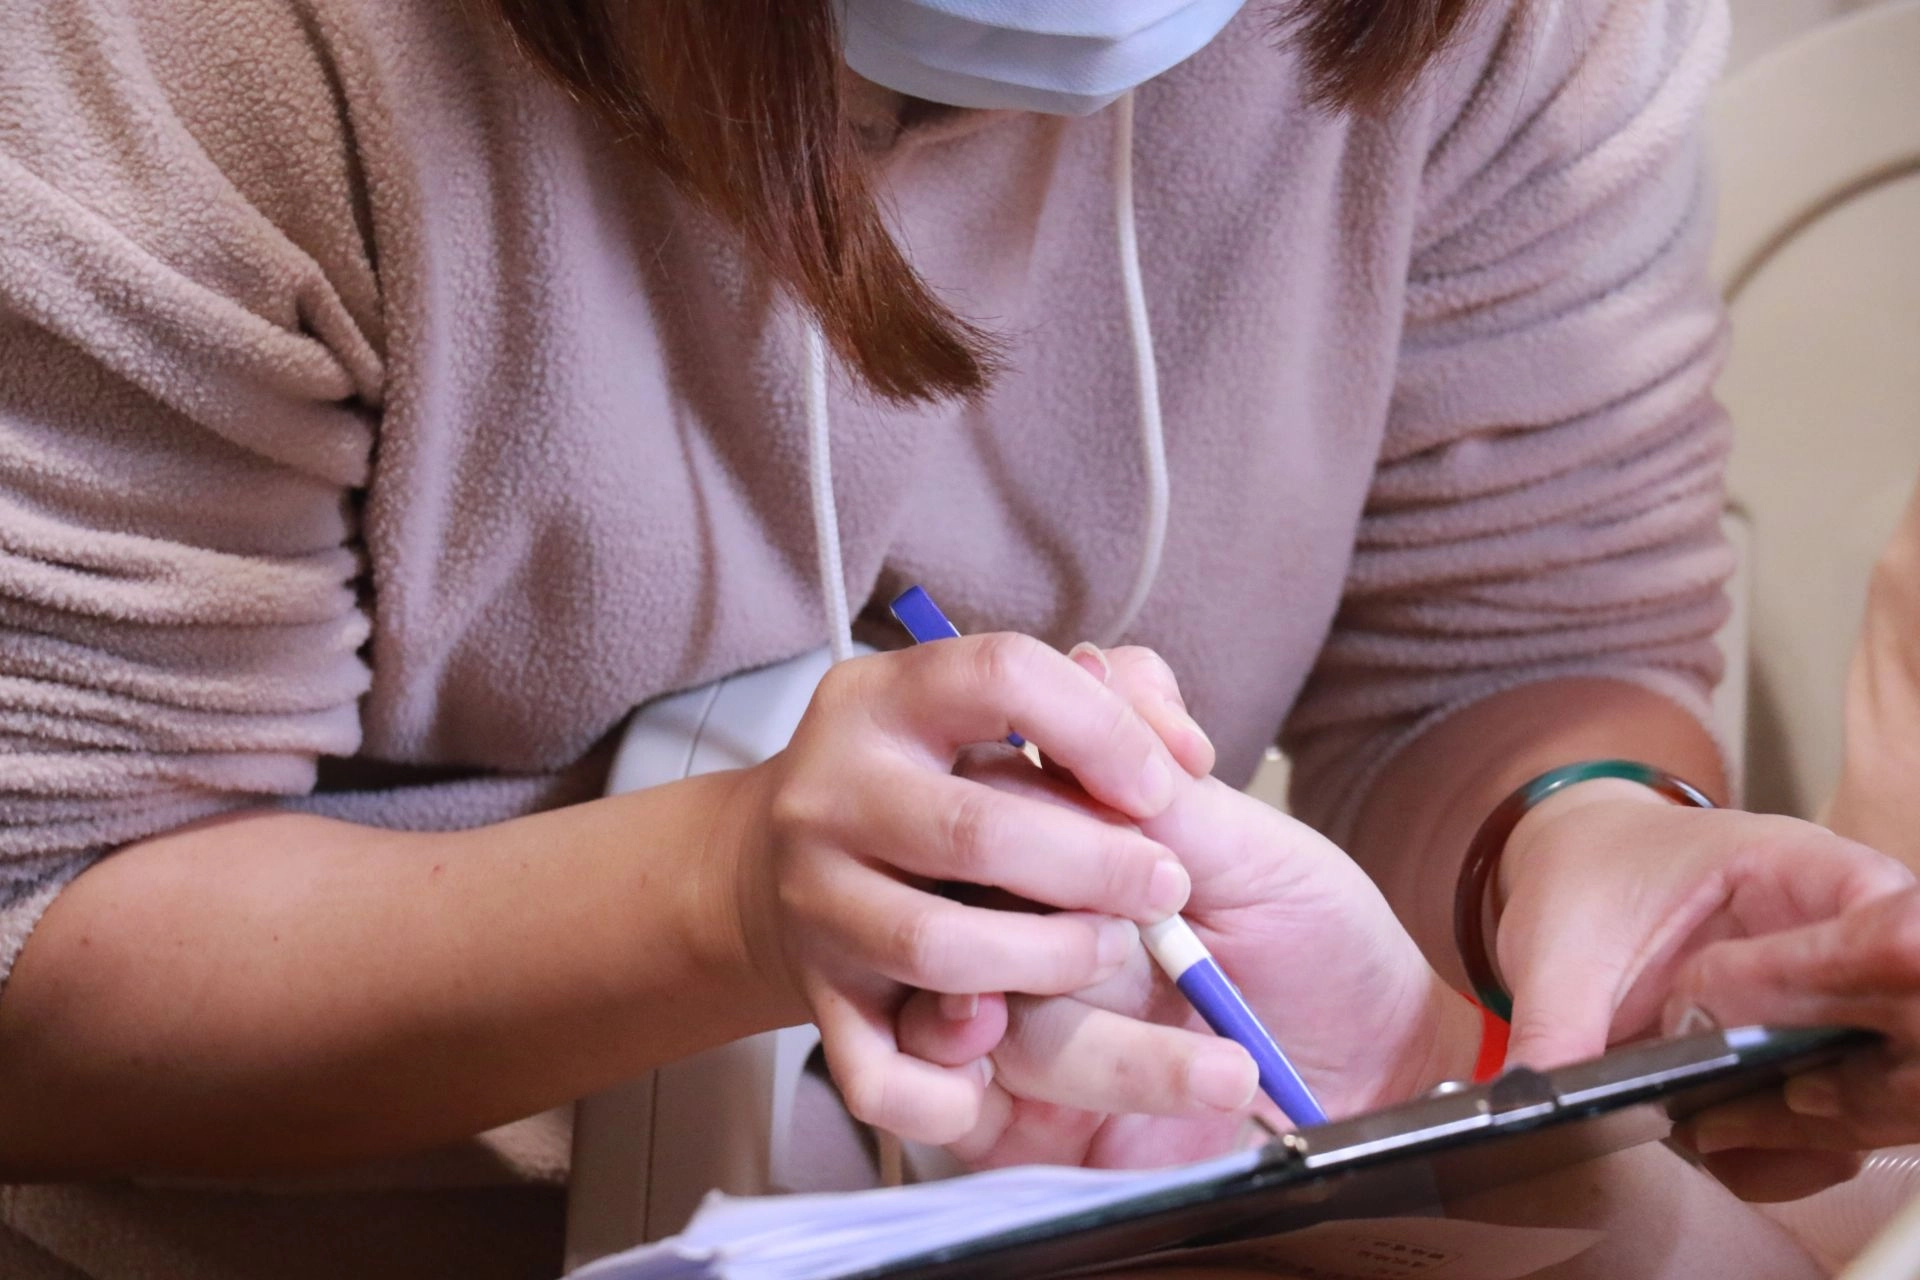 無法執筆的黃鼎承由太太協助握筆，簽屬捐贈同意書，捐出腦組織做醫學研究。